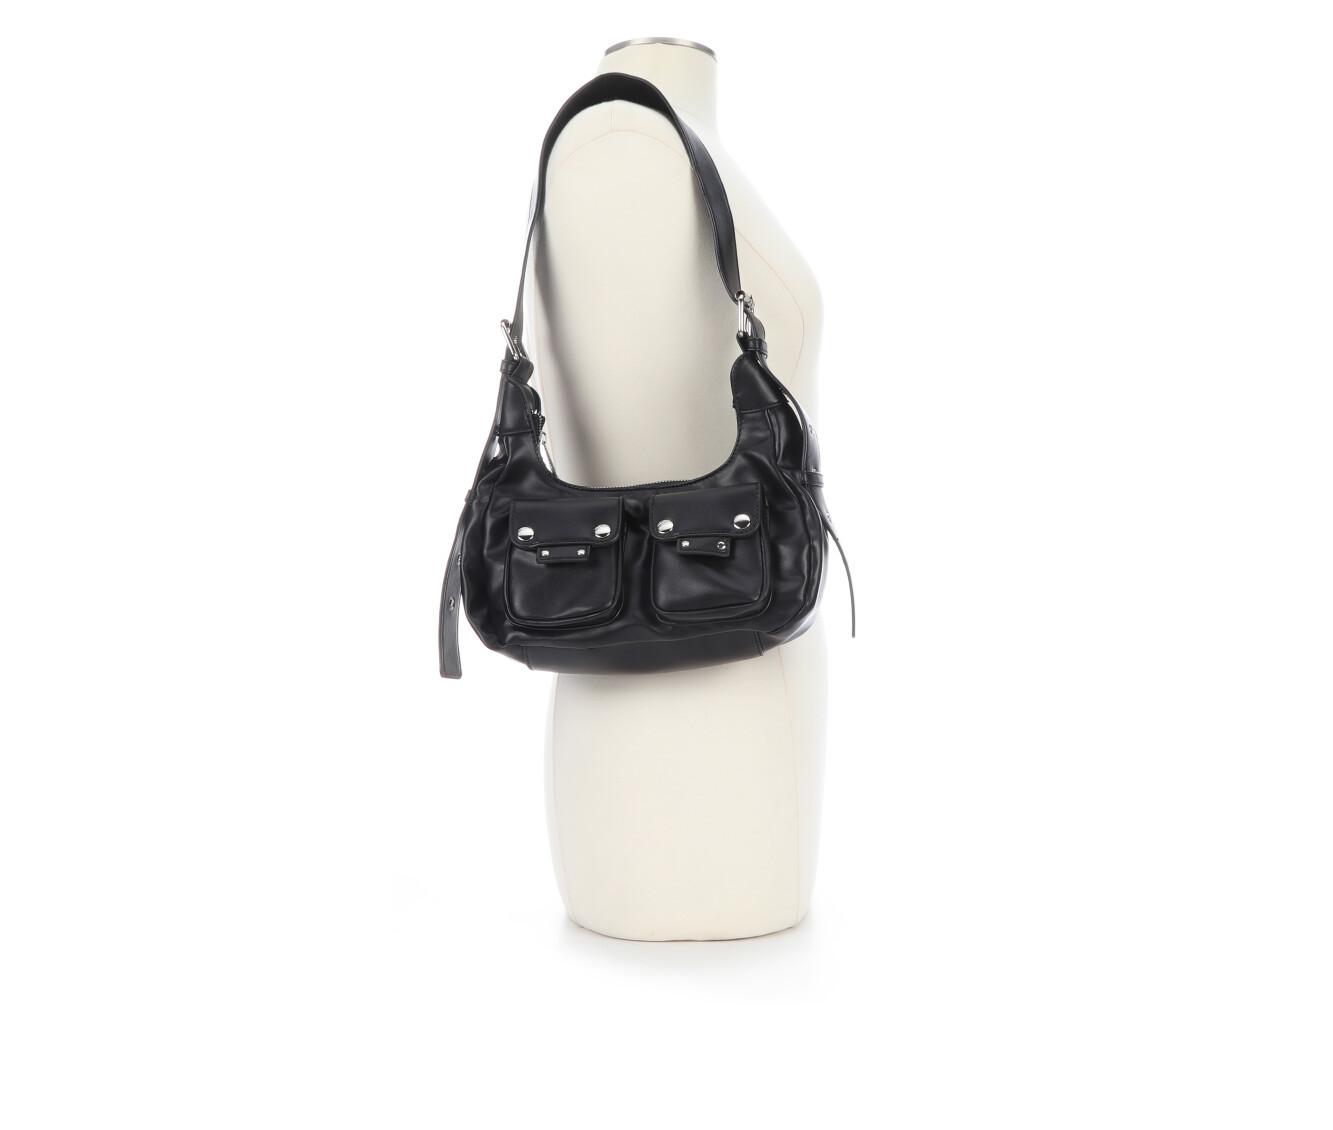 Olivia Miller 2 Pocket Handbag Handbag